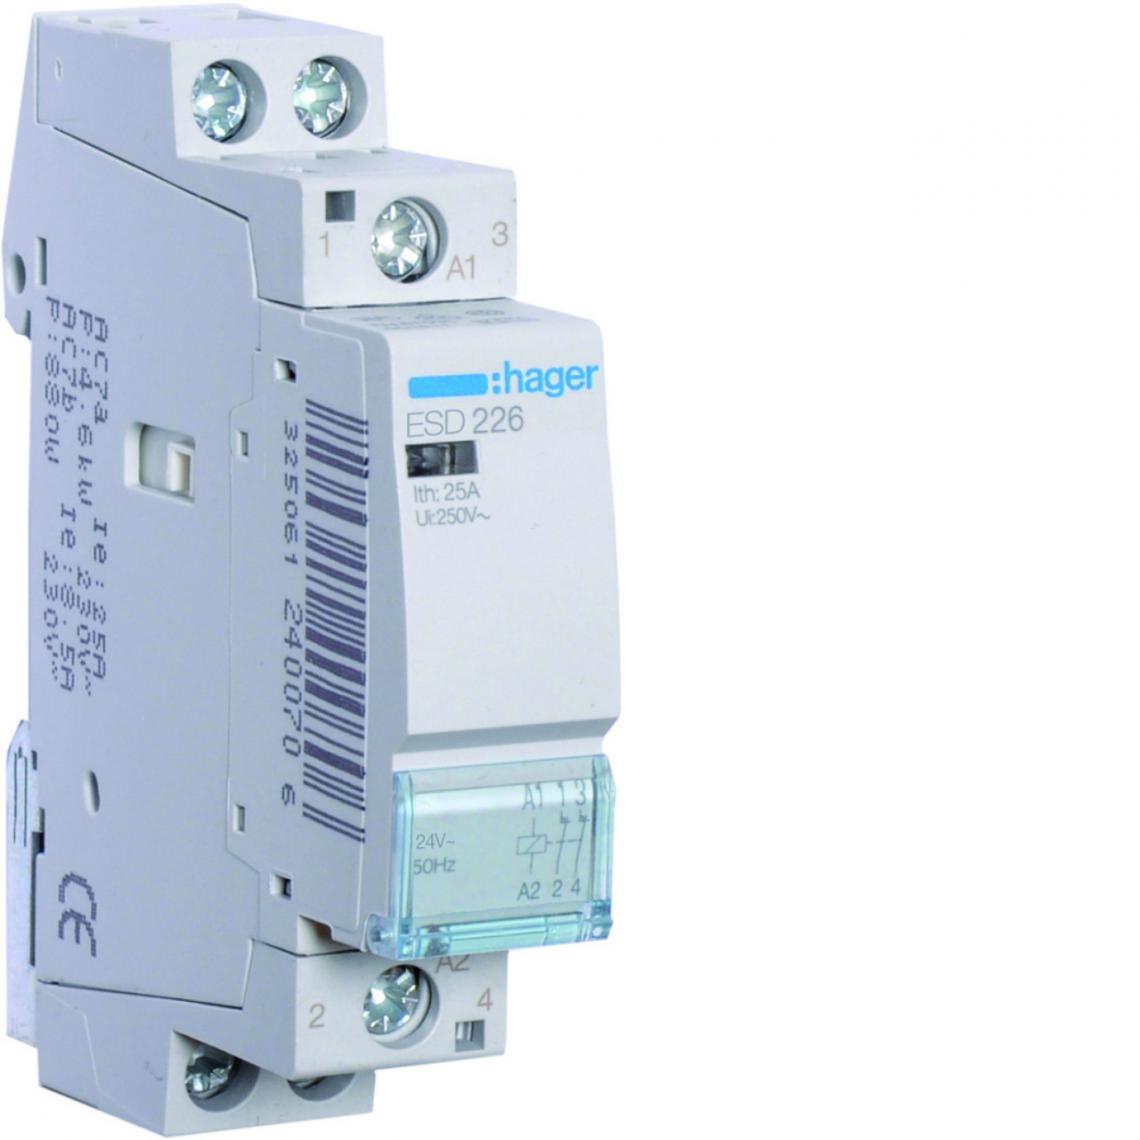 Hager - contacteur modulaire - 25a - 2 contacts no - 24v - hager esd226 - Télérupteurs, minuteries et horloges